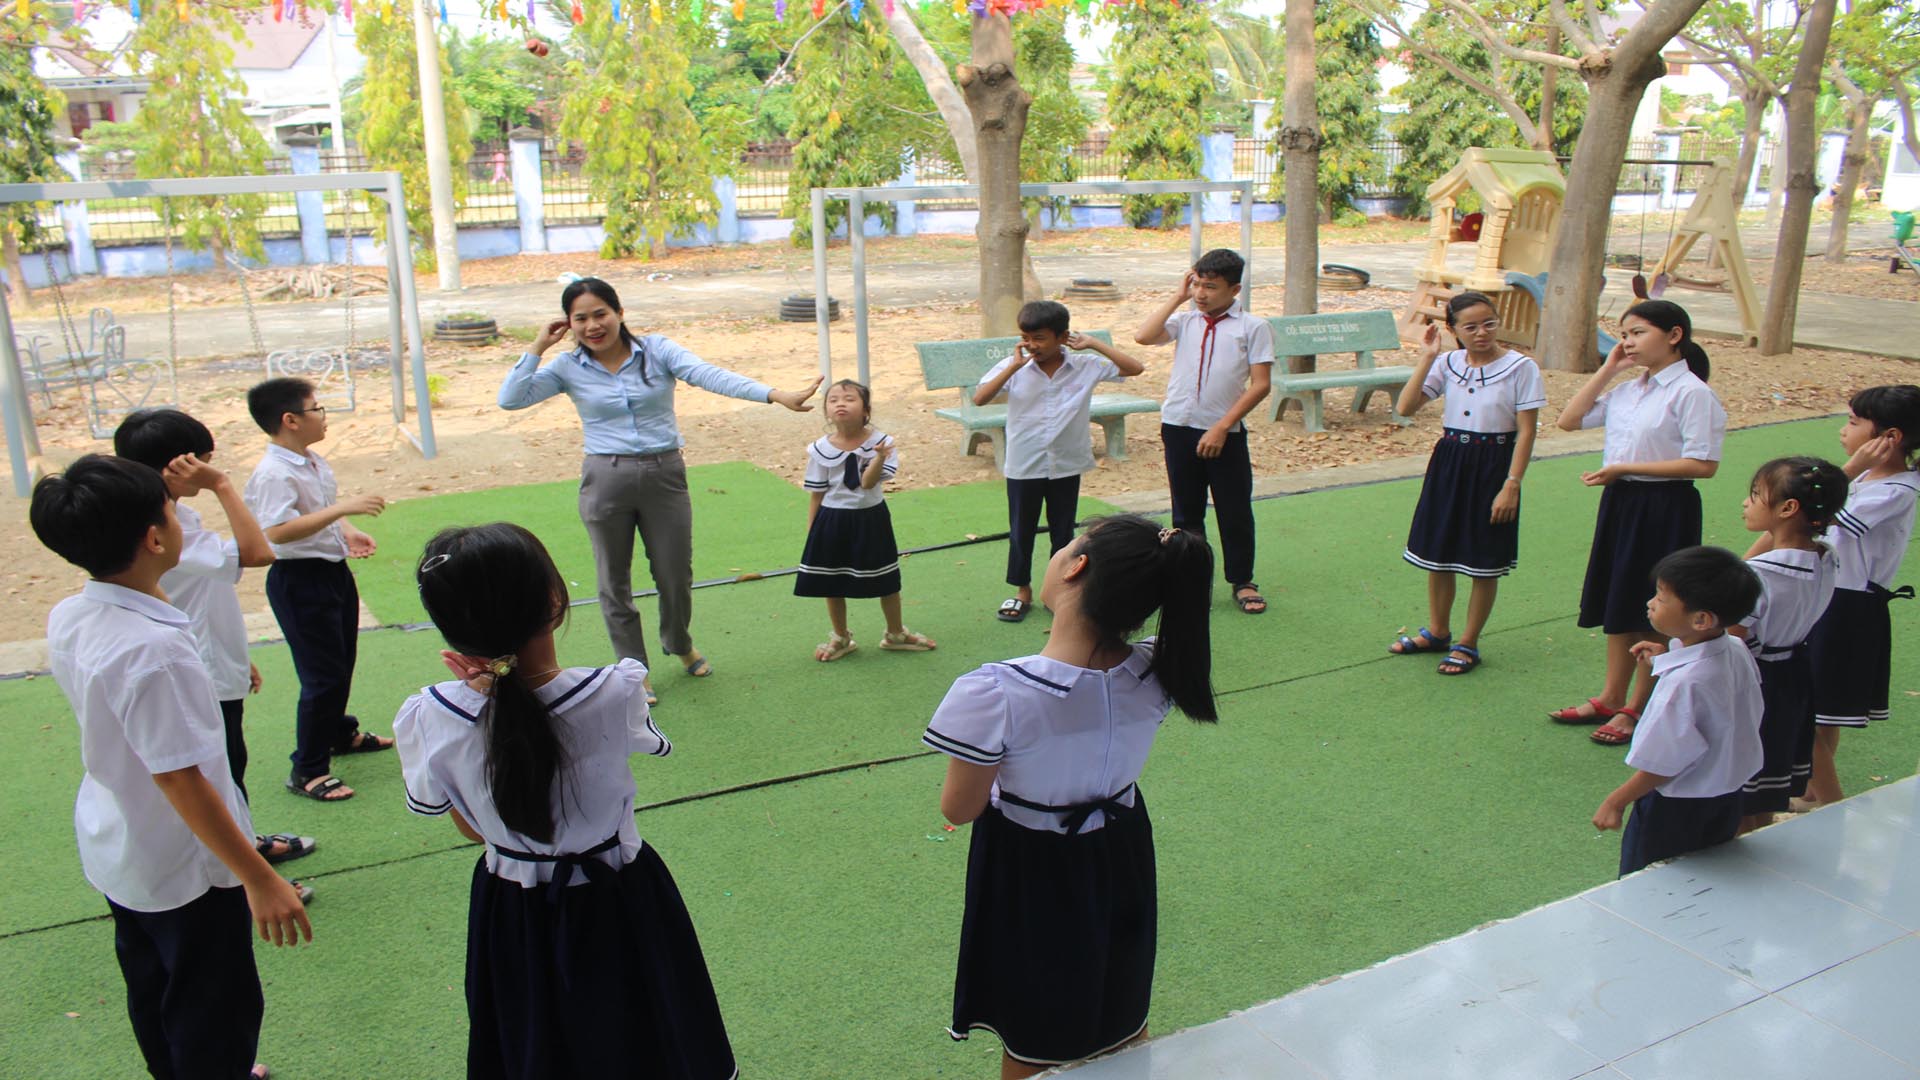 Cô giáo Nguyễn Thị Năng giảng dạy cách thể hiện ngôn ngữ bằng các ký hiệu tạo hình từ hai bàn tay cho học sinh bị khiếm thính tại Trung tâm Hỗ trợ phát triển giáo dục hòa nhập tỉnh Ninh Thuận.